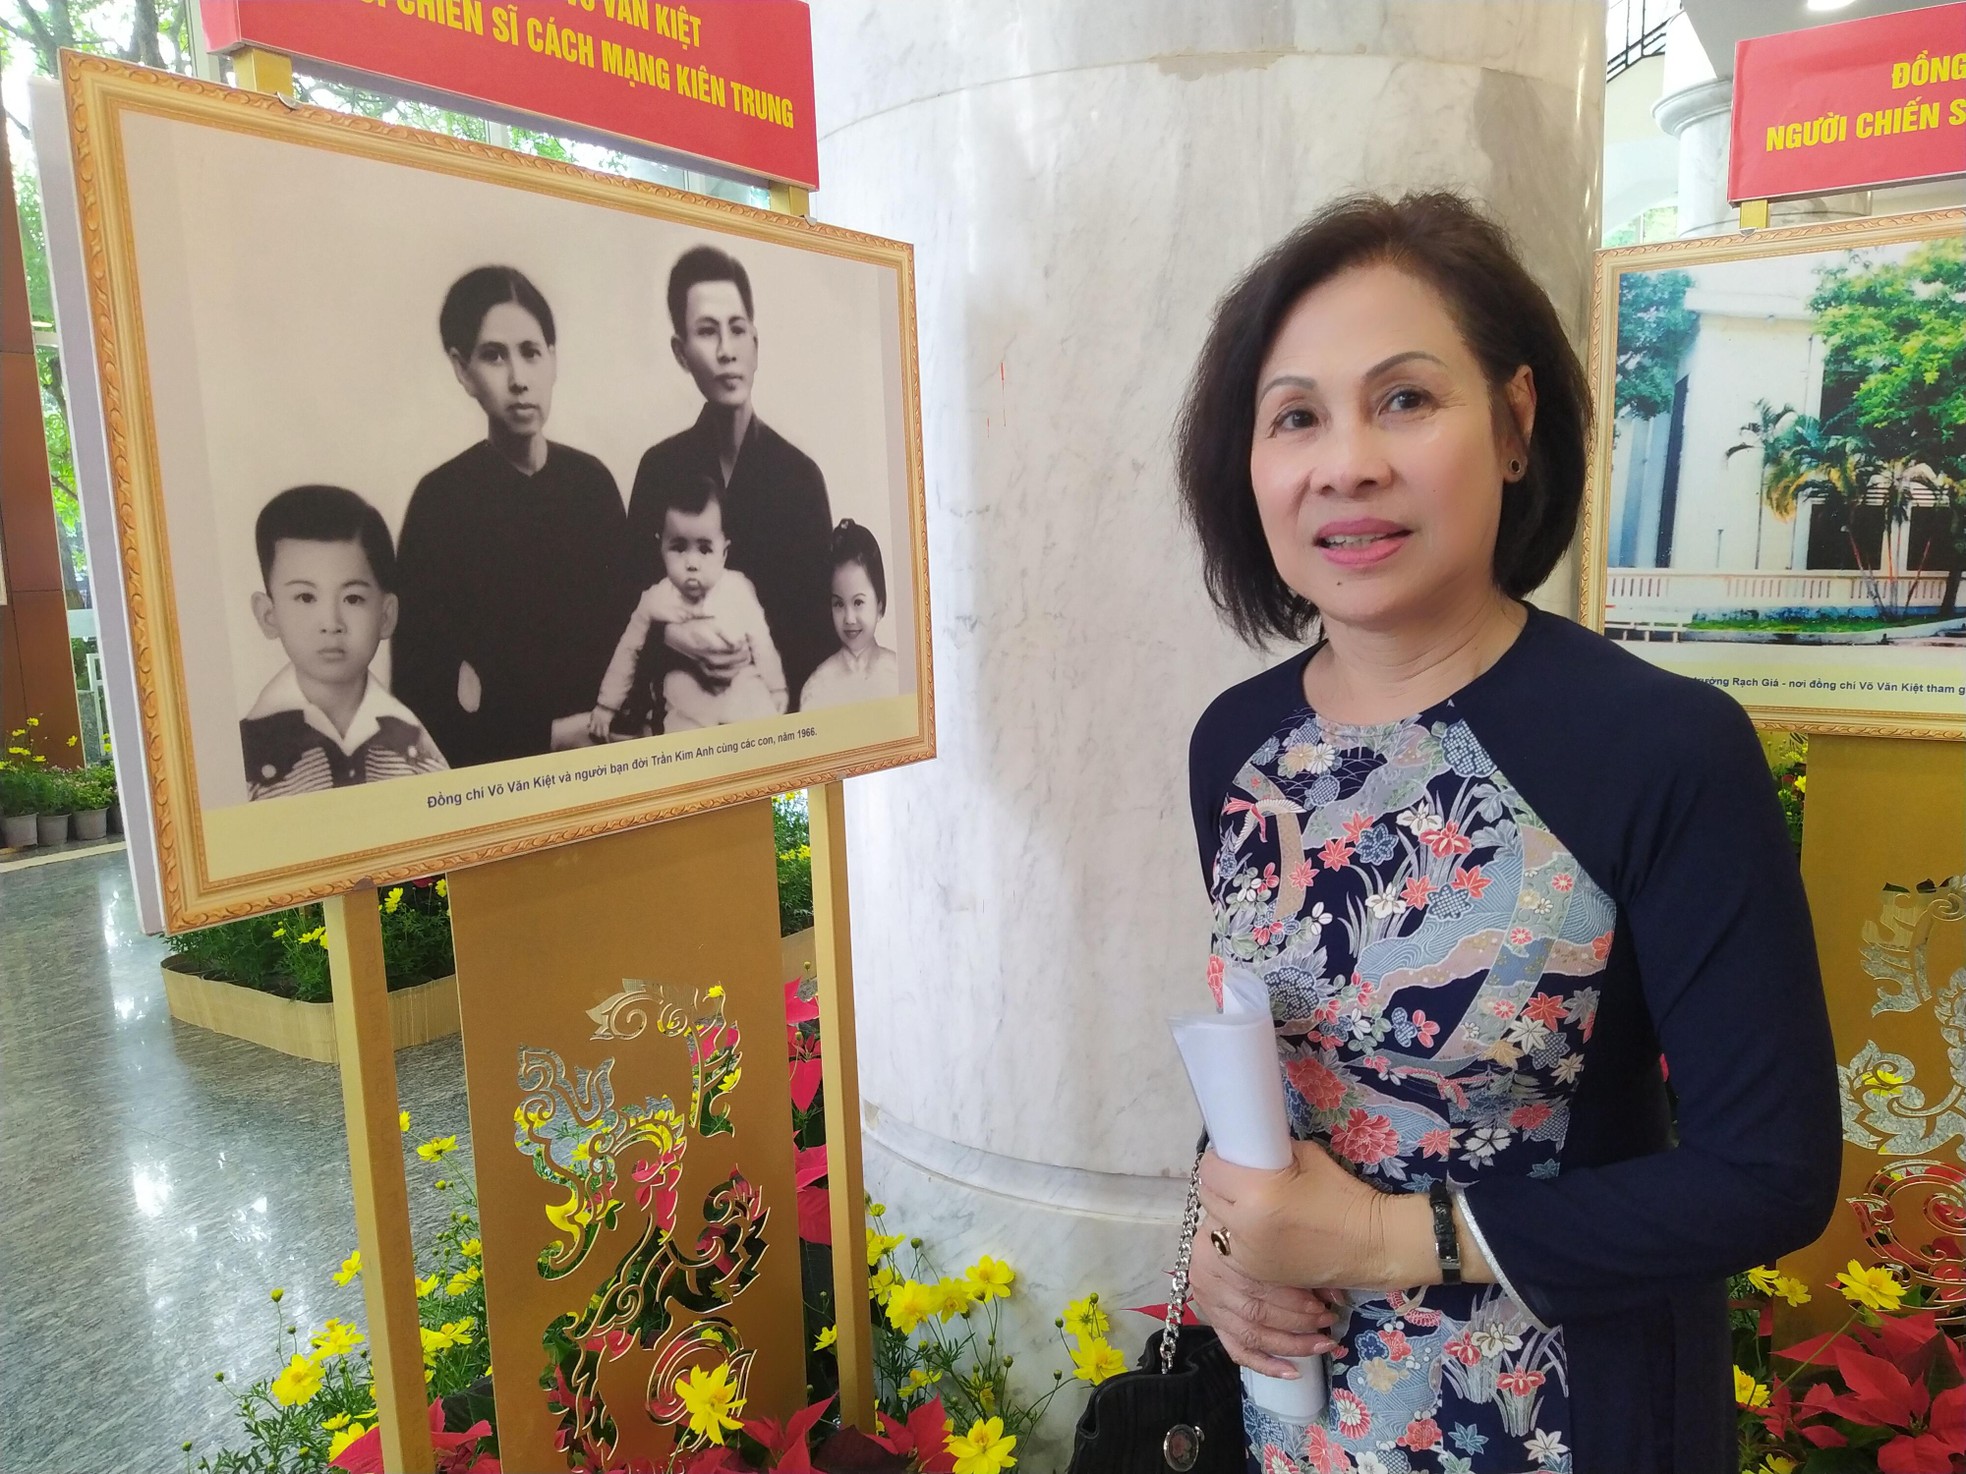 Đồng chí Võ Văn Kiệt - nhà lãnh đạo xuất sắc của Đảng và cách mạng Việt Nam ảnh 5